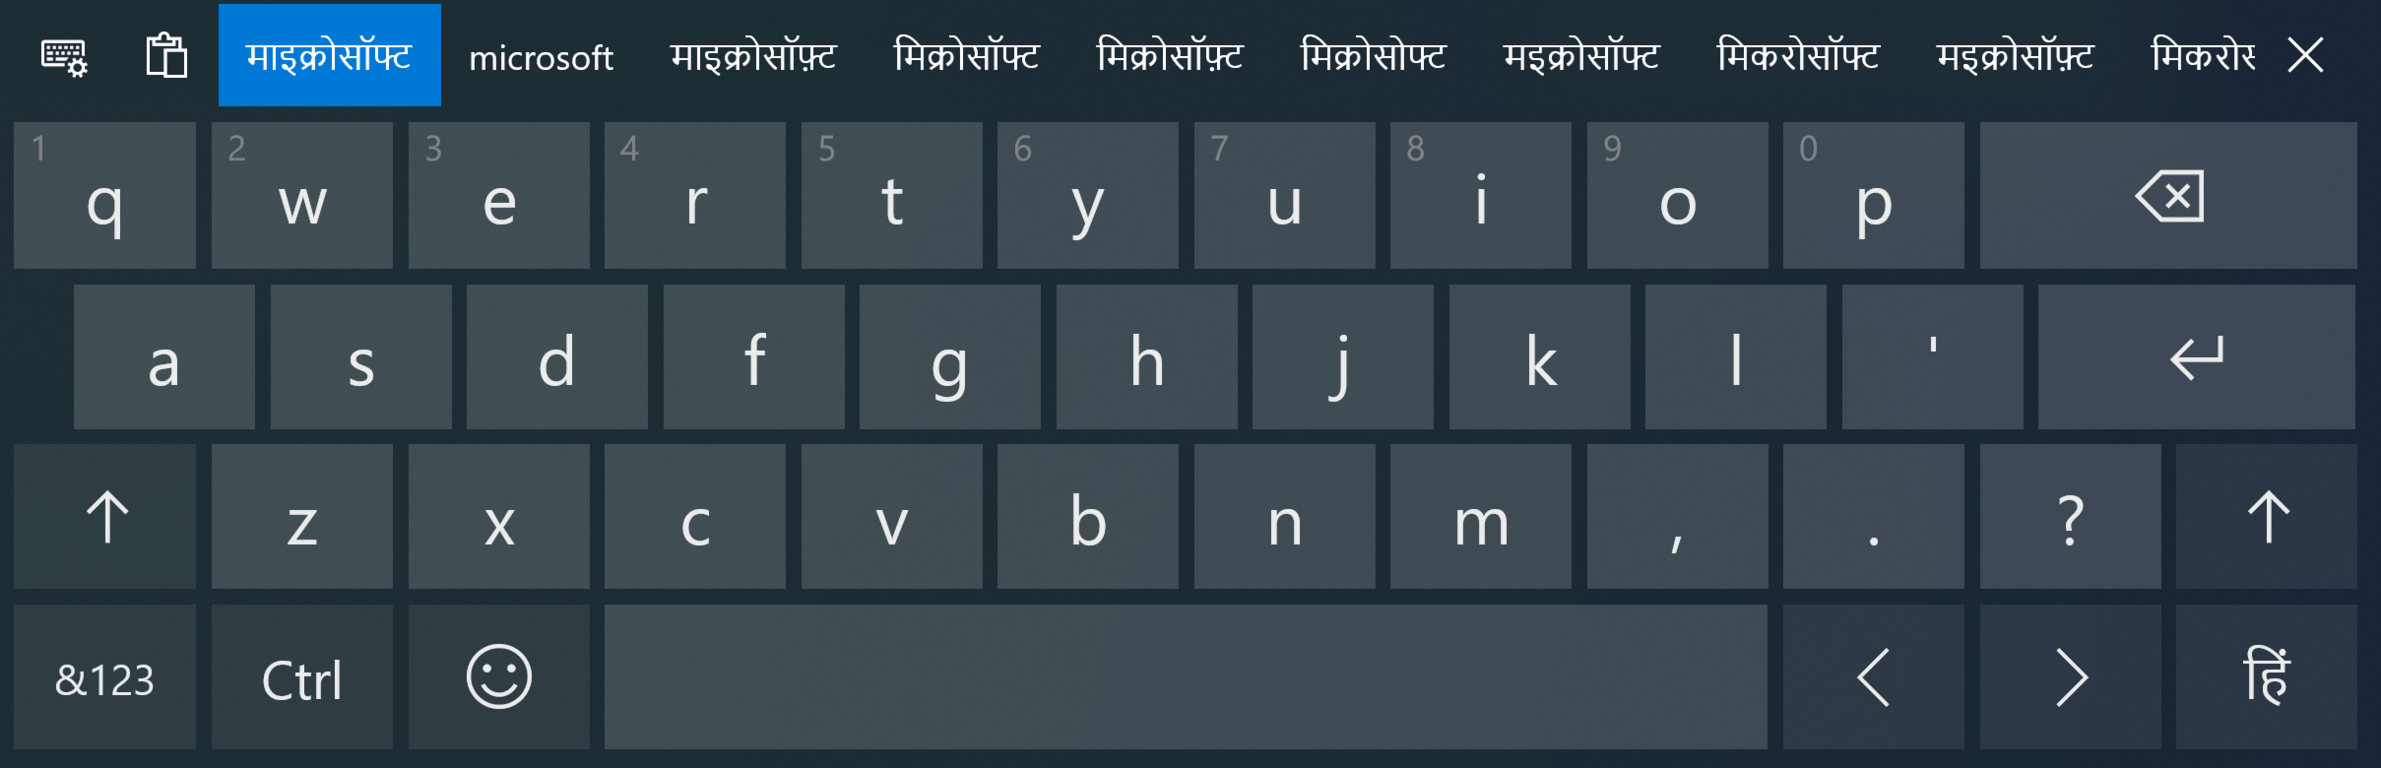 gujarati indic input 3 keyboard download